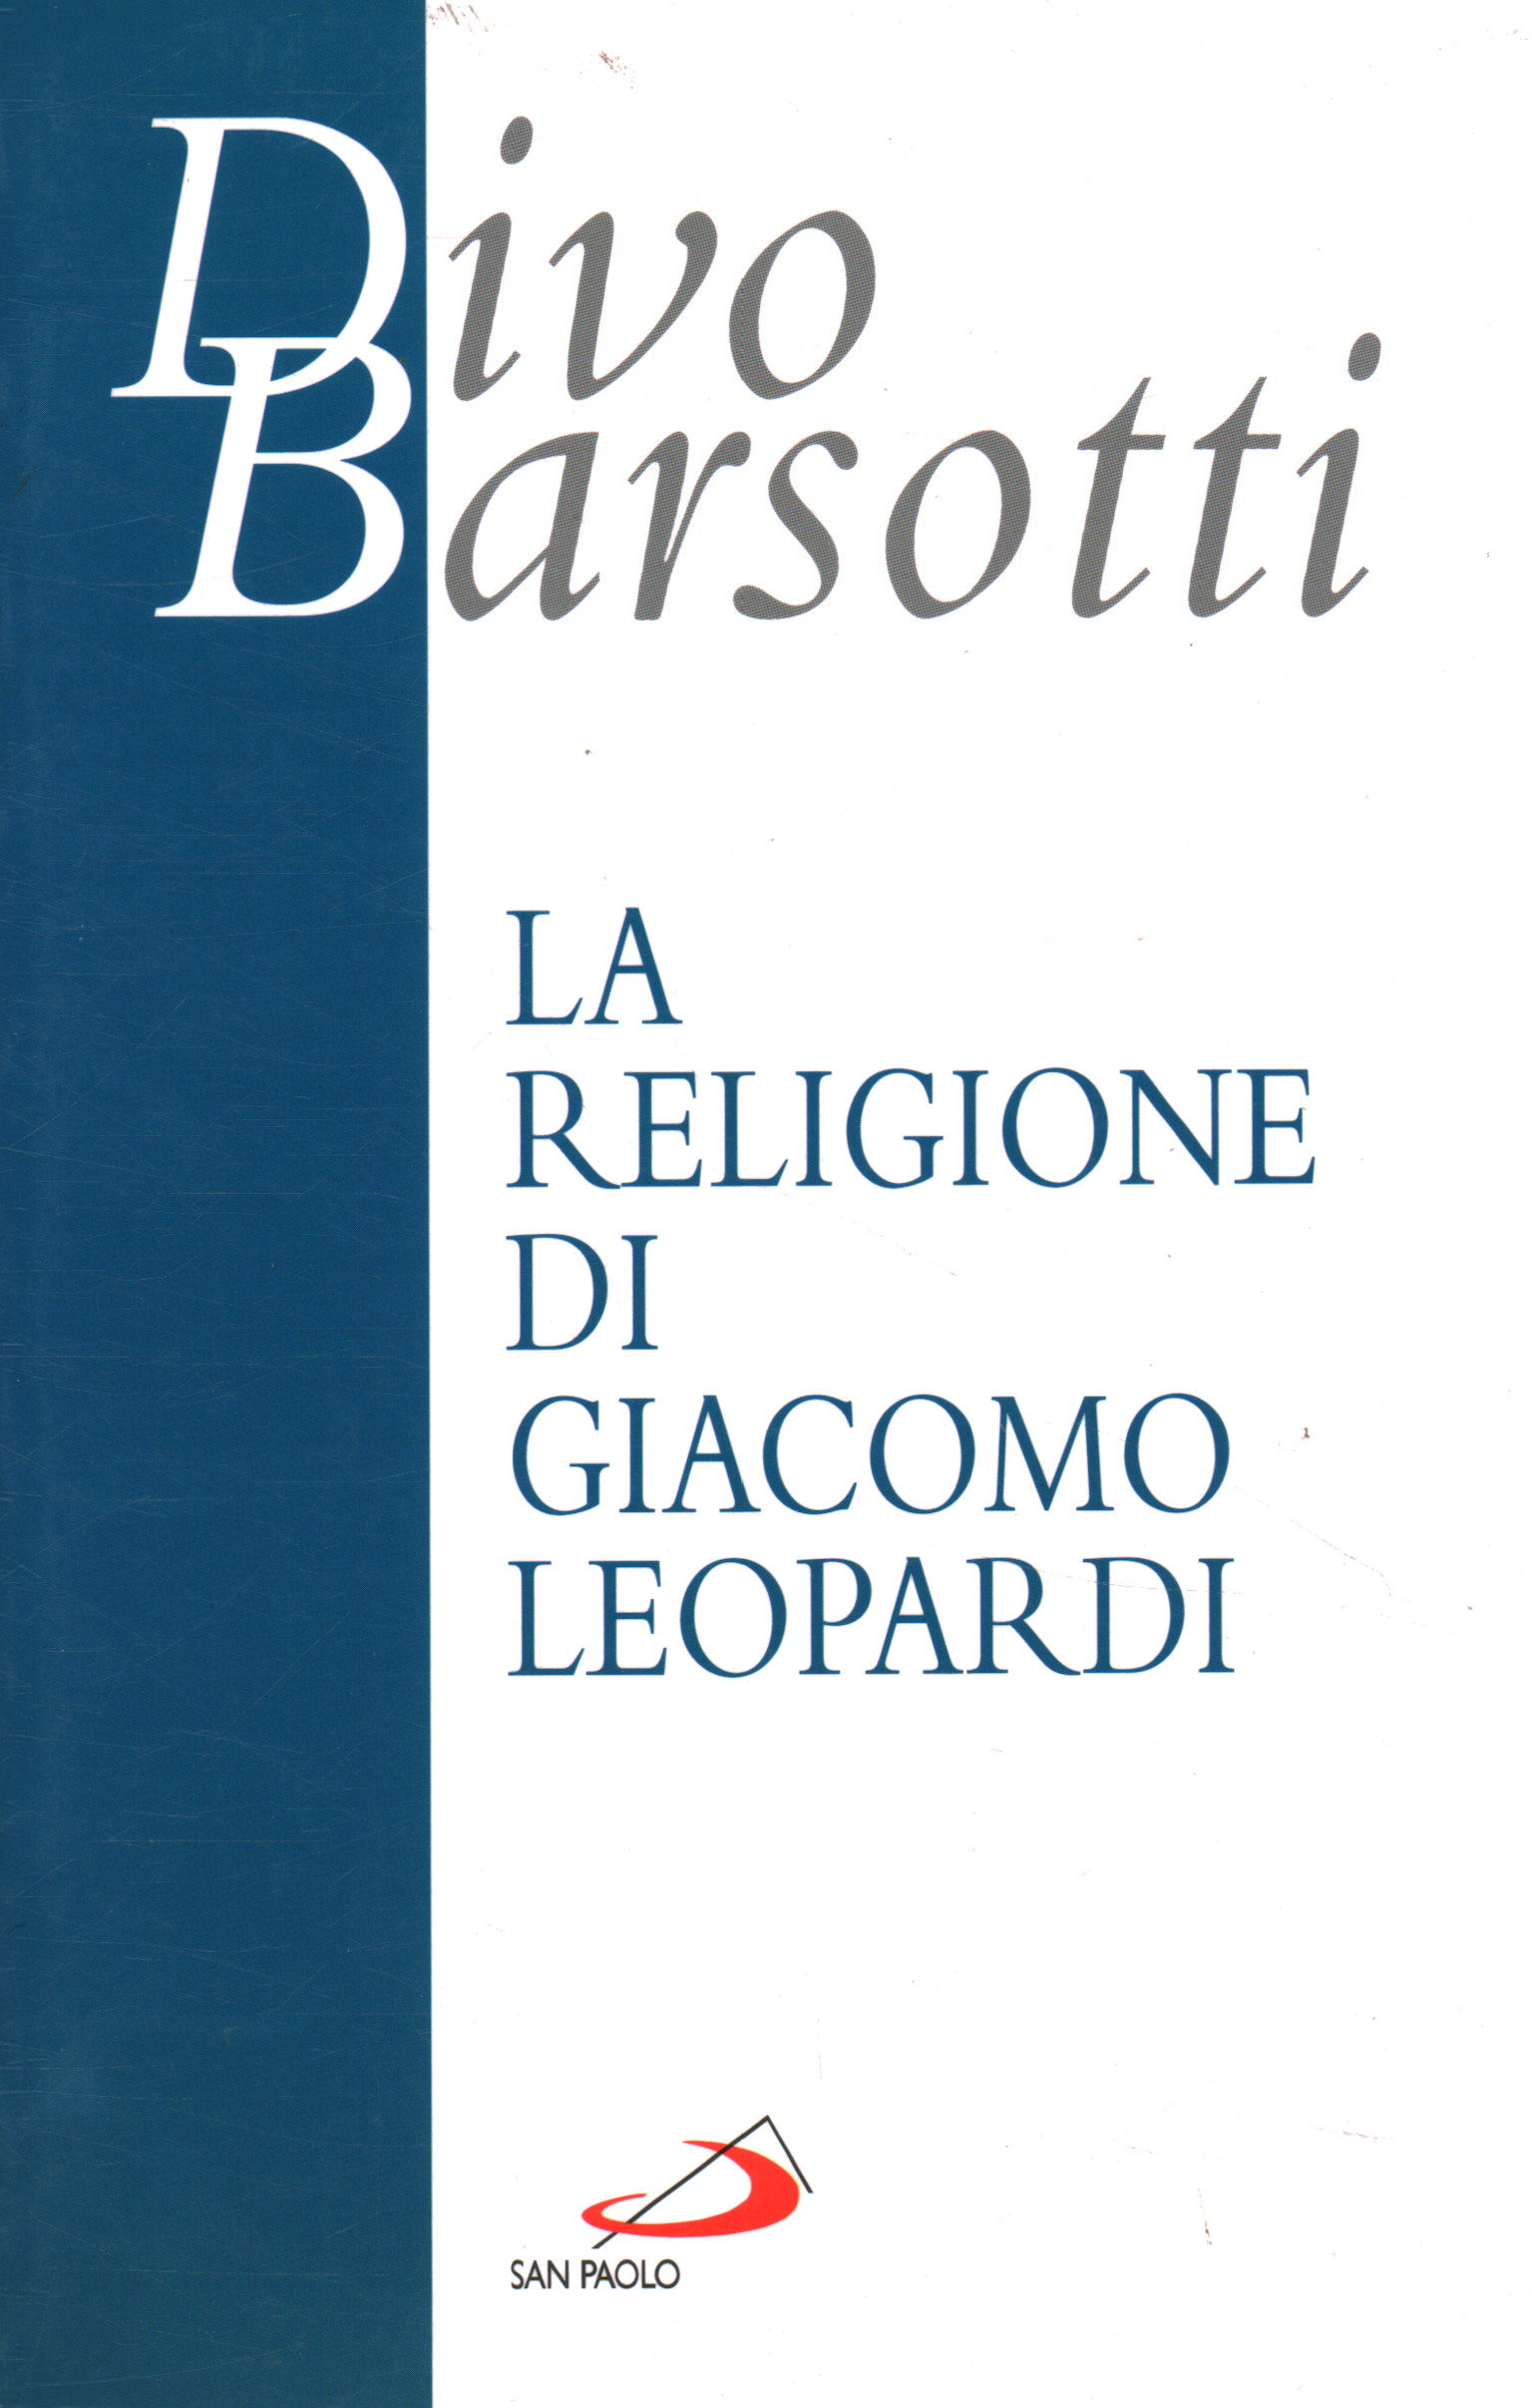 La religion de Giacomo Leopardi